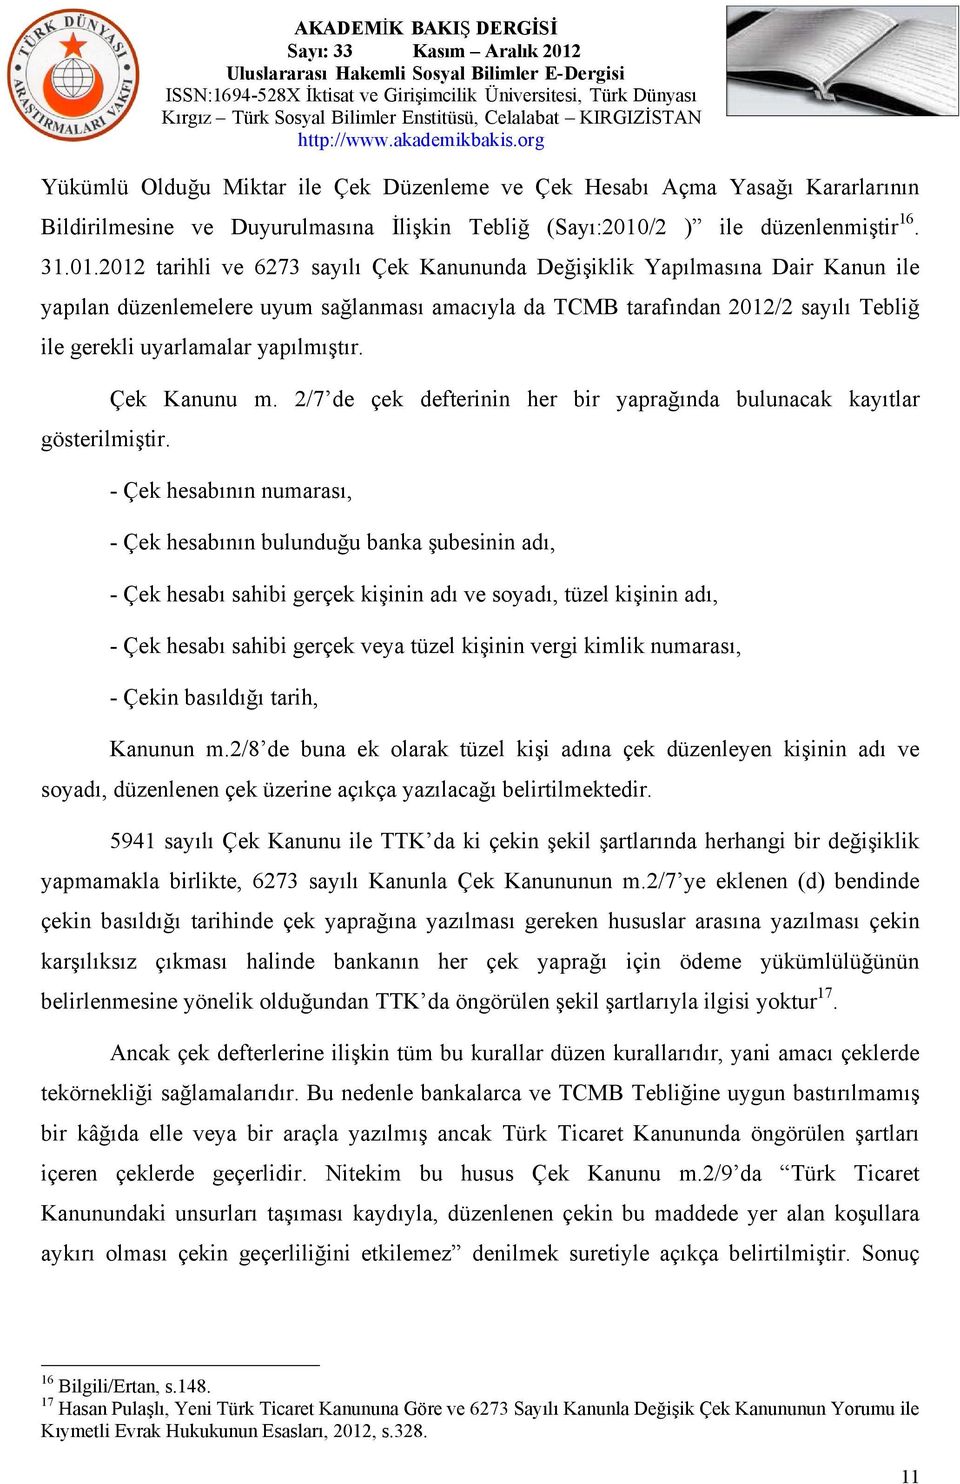 2012 tarihli ve 6273 sayılı Çek Kanununda Değişiklik Yapılmasına Dair Kanun ile yapılan düzenlemelere uyum sağlanması amacıyla da TCMB tarafından 2012/2 sayılı Tebliğ ile gerekli uyarlamalar